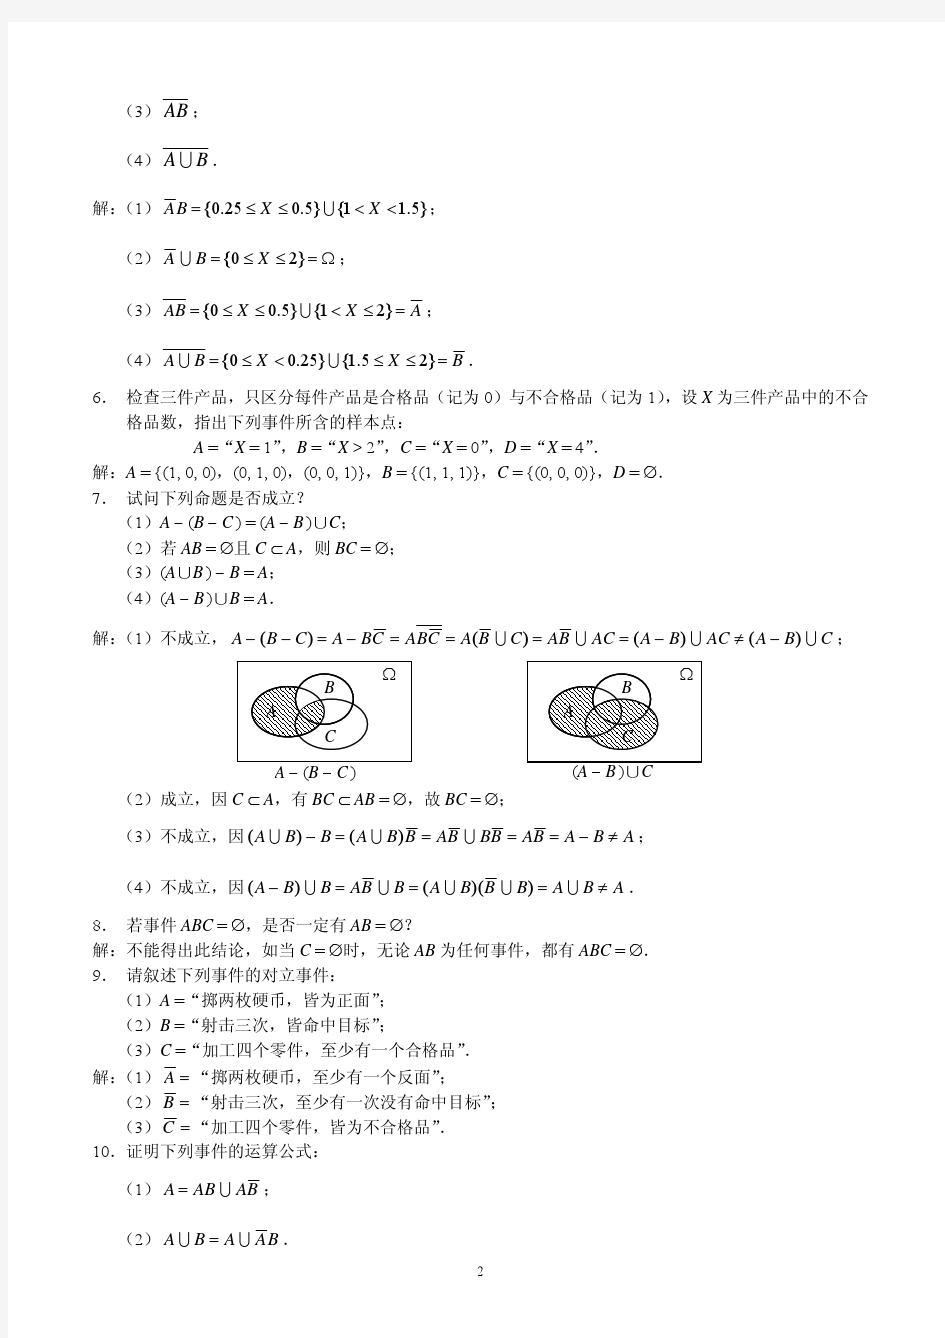 概率论与数理统计(茆诗松)第二版第一章课后习题1.1-1.3参考答案